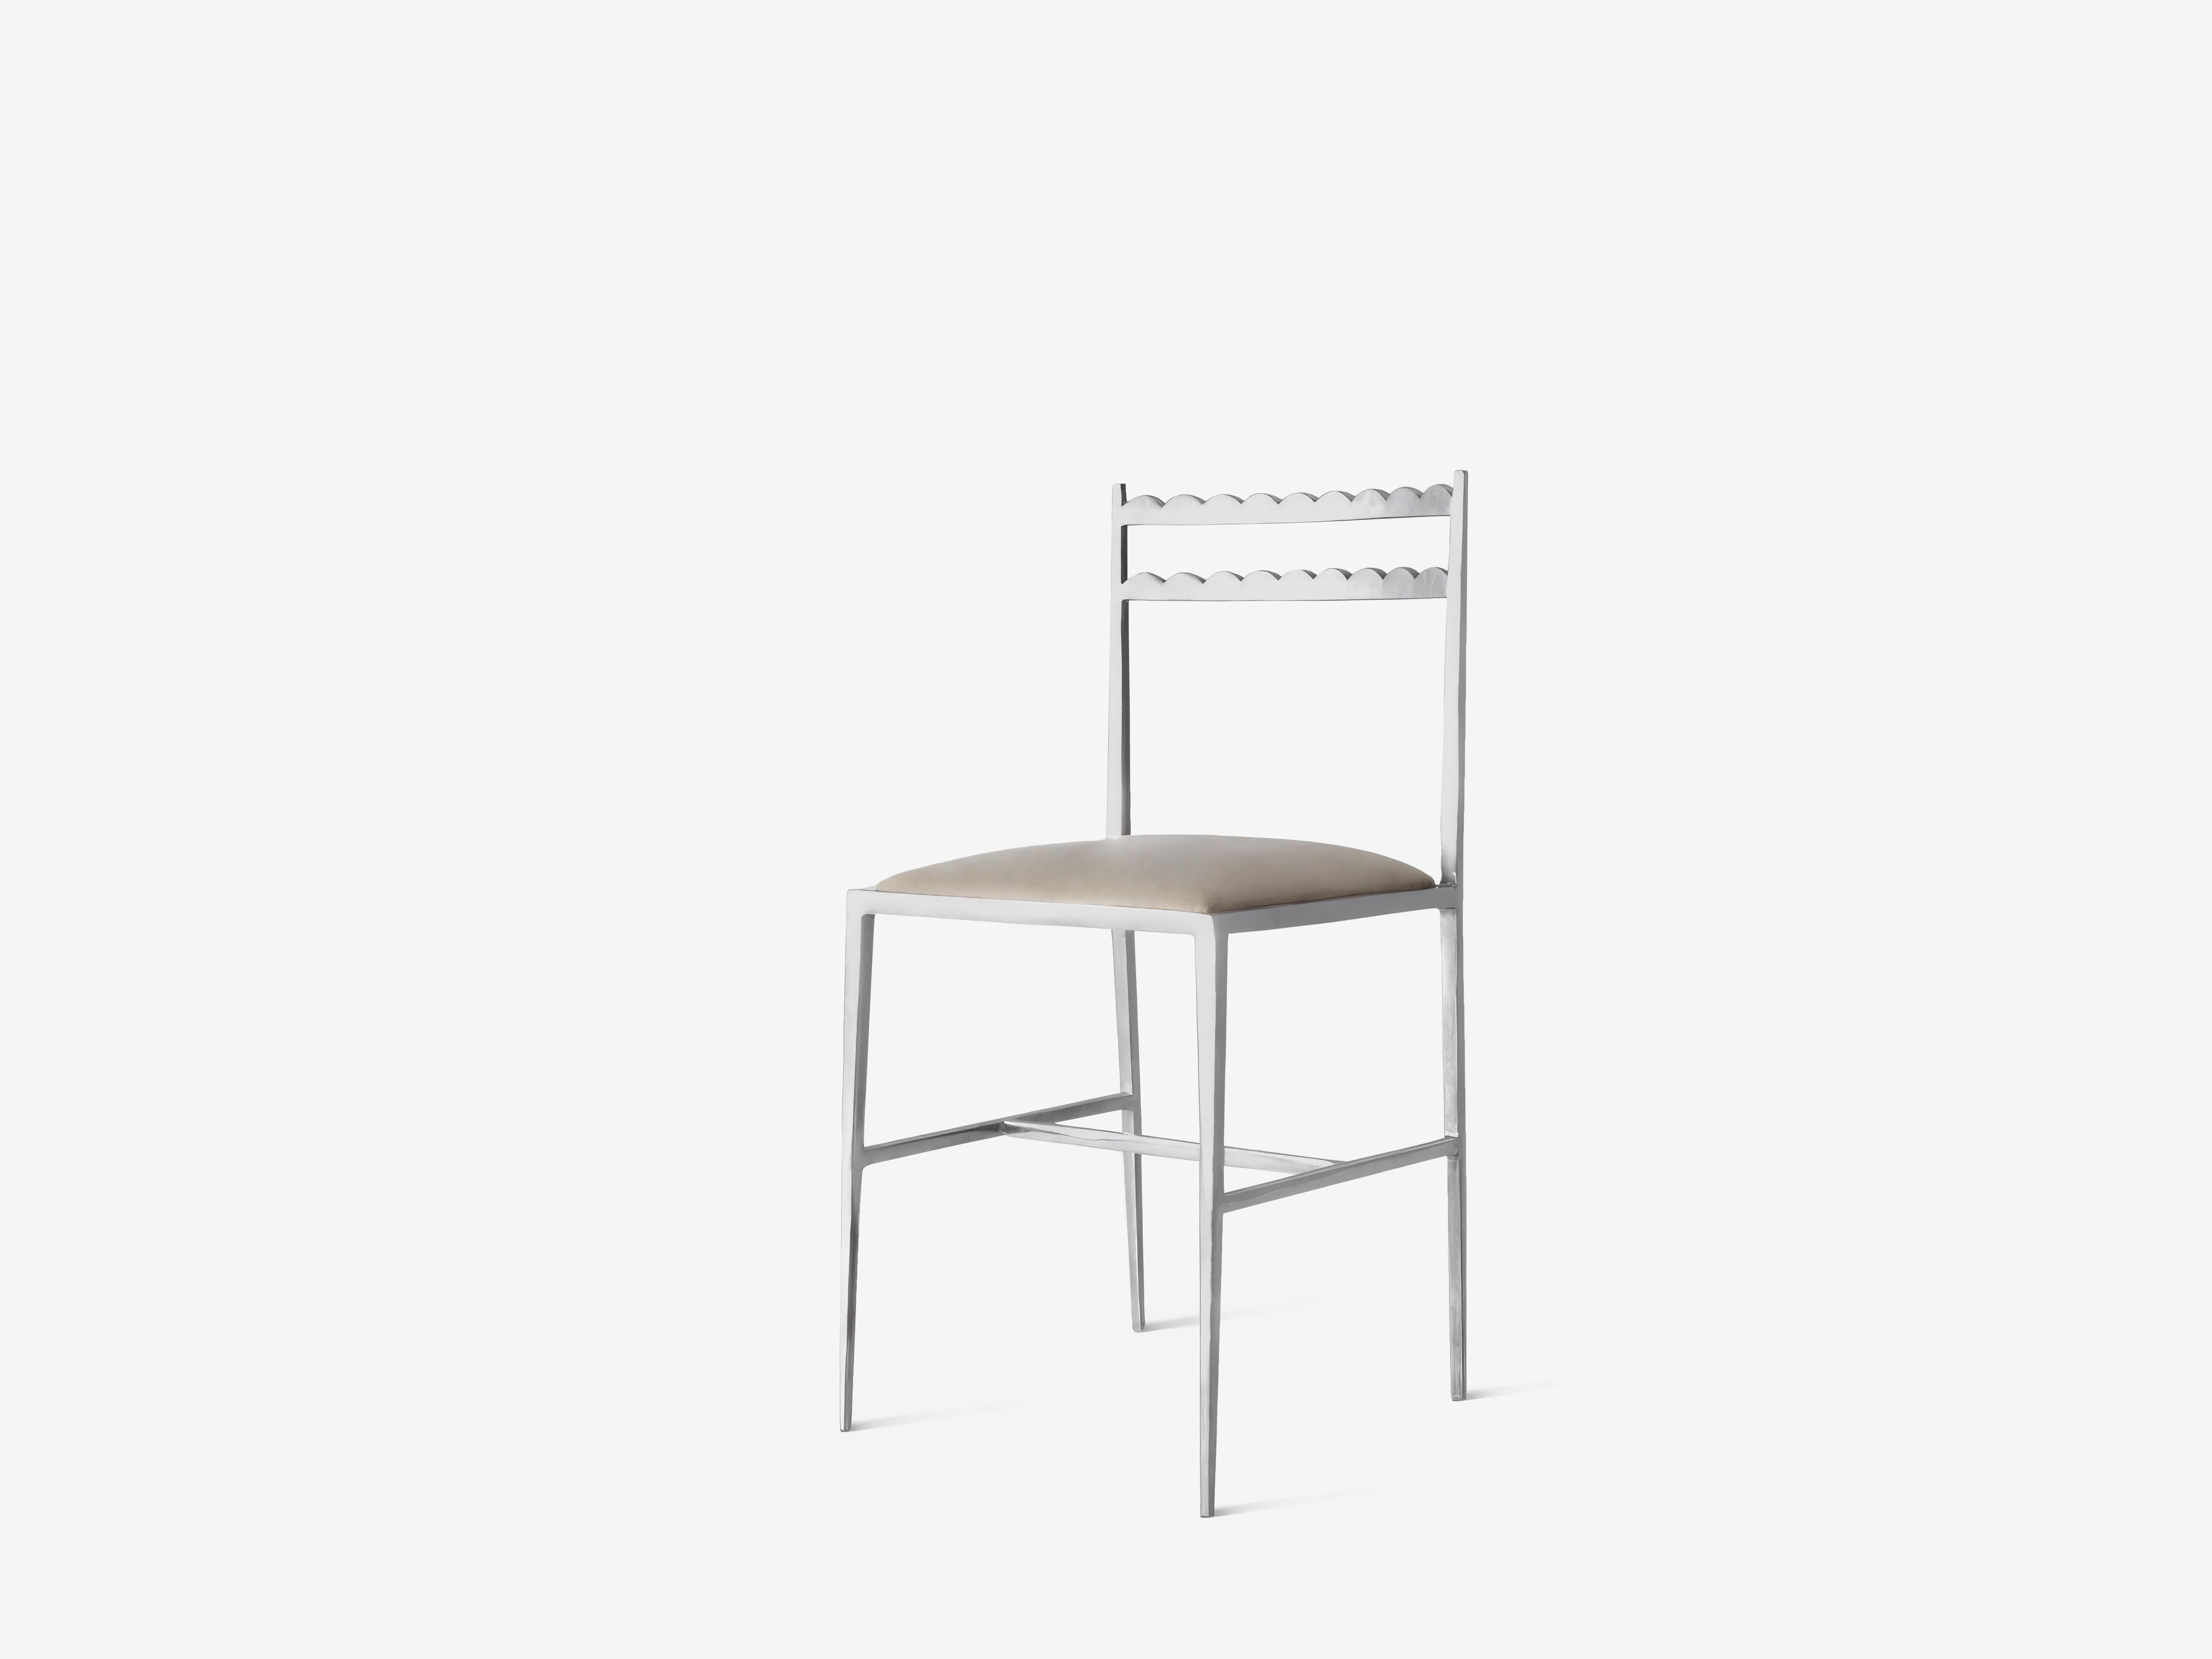 Lupita Esszimmerstuhl von OHLA STUDIO
Abmessungen: T 40 x B 40 x H 83 cm 
MATERIALIEN: Poliertes Aluminium.
8,5 kg

Dieser Stuhl ist von den traditionellen mexikanischen Bänken mit Muschelschnitzerei aus dem 19. Jahrhundert inspiriert, die den